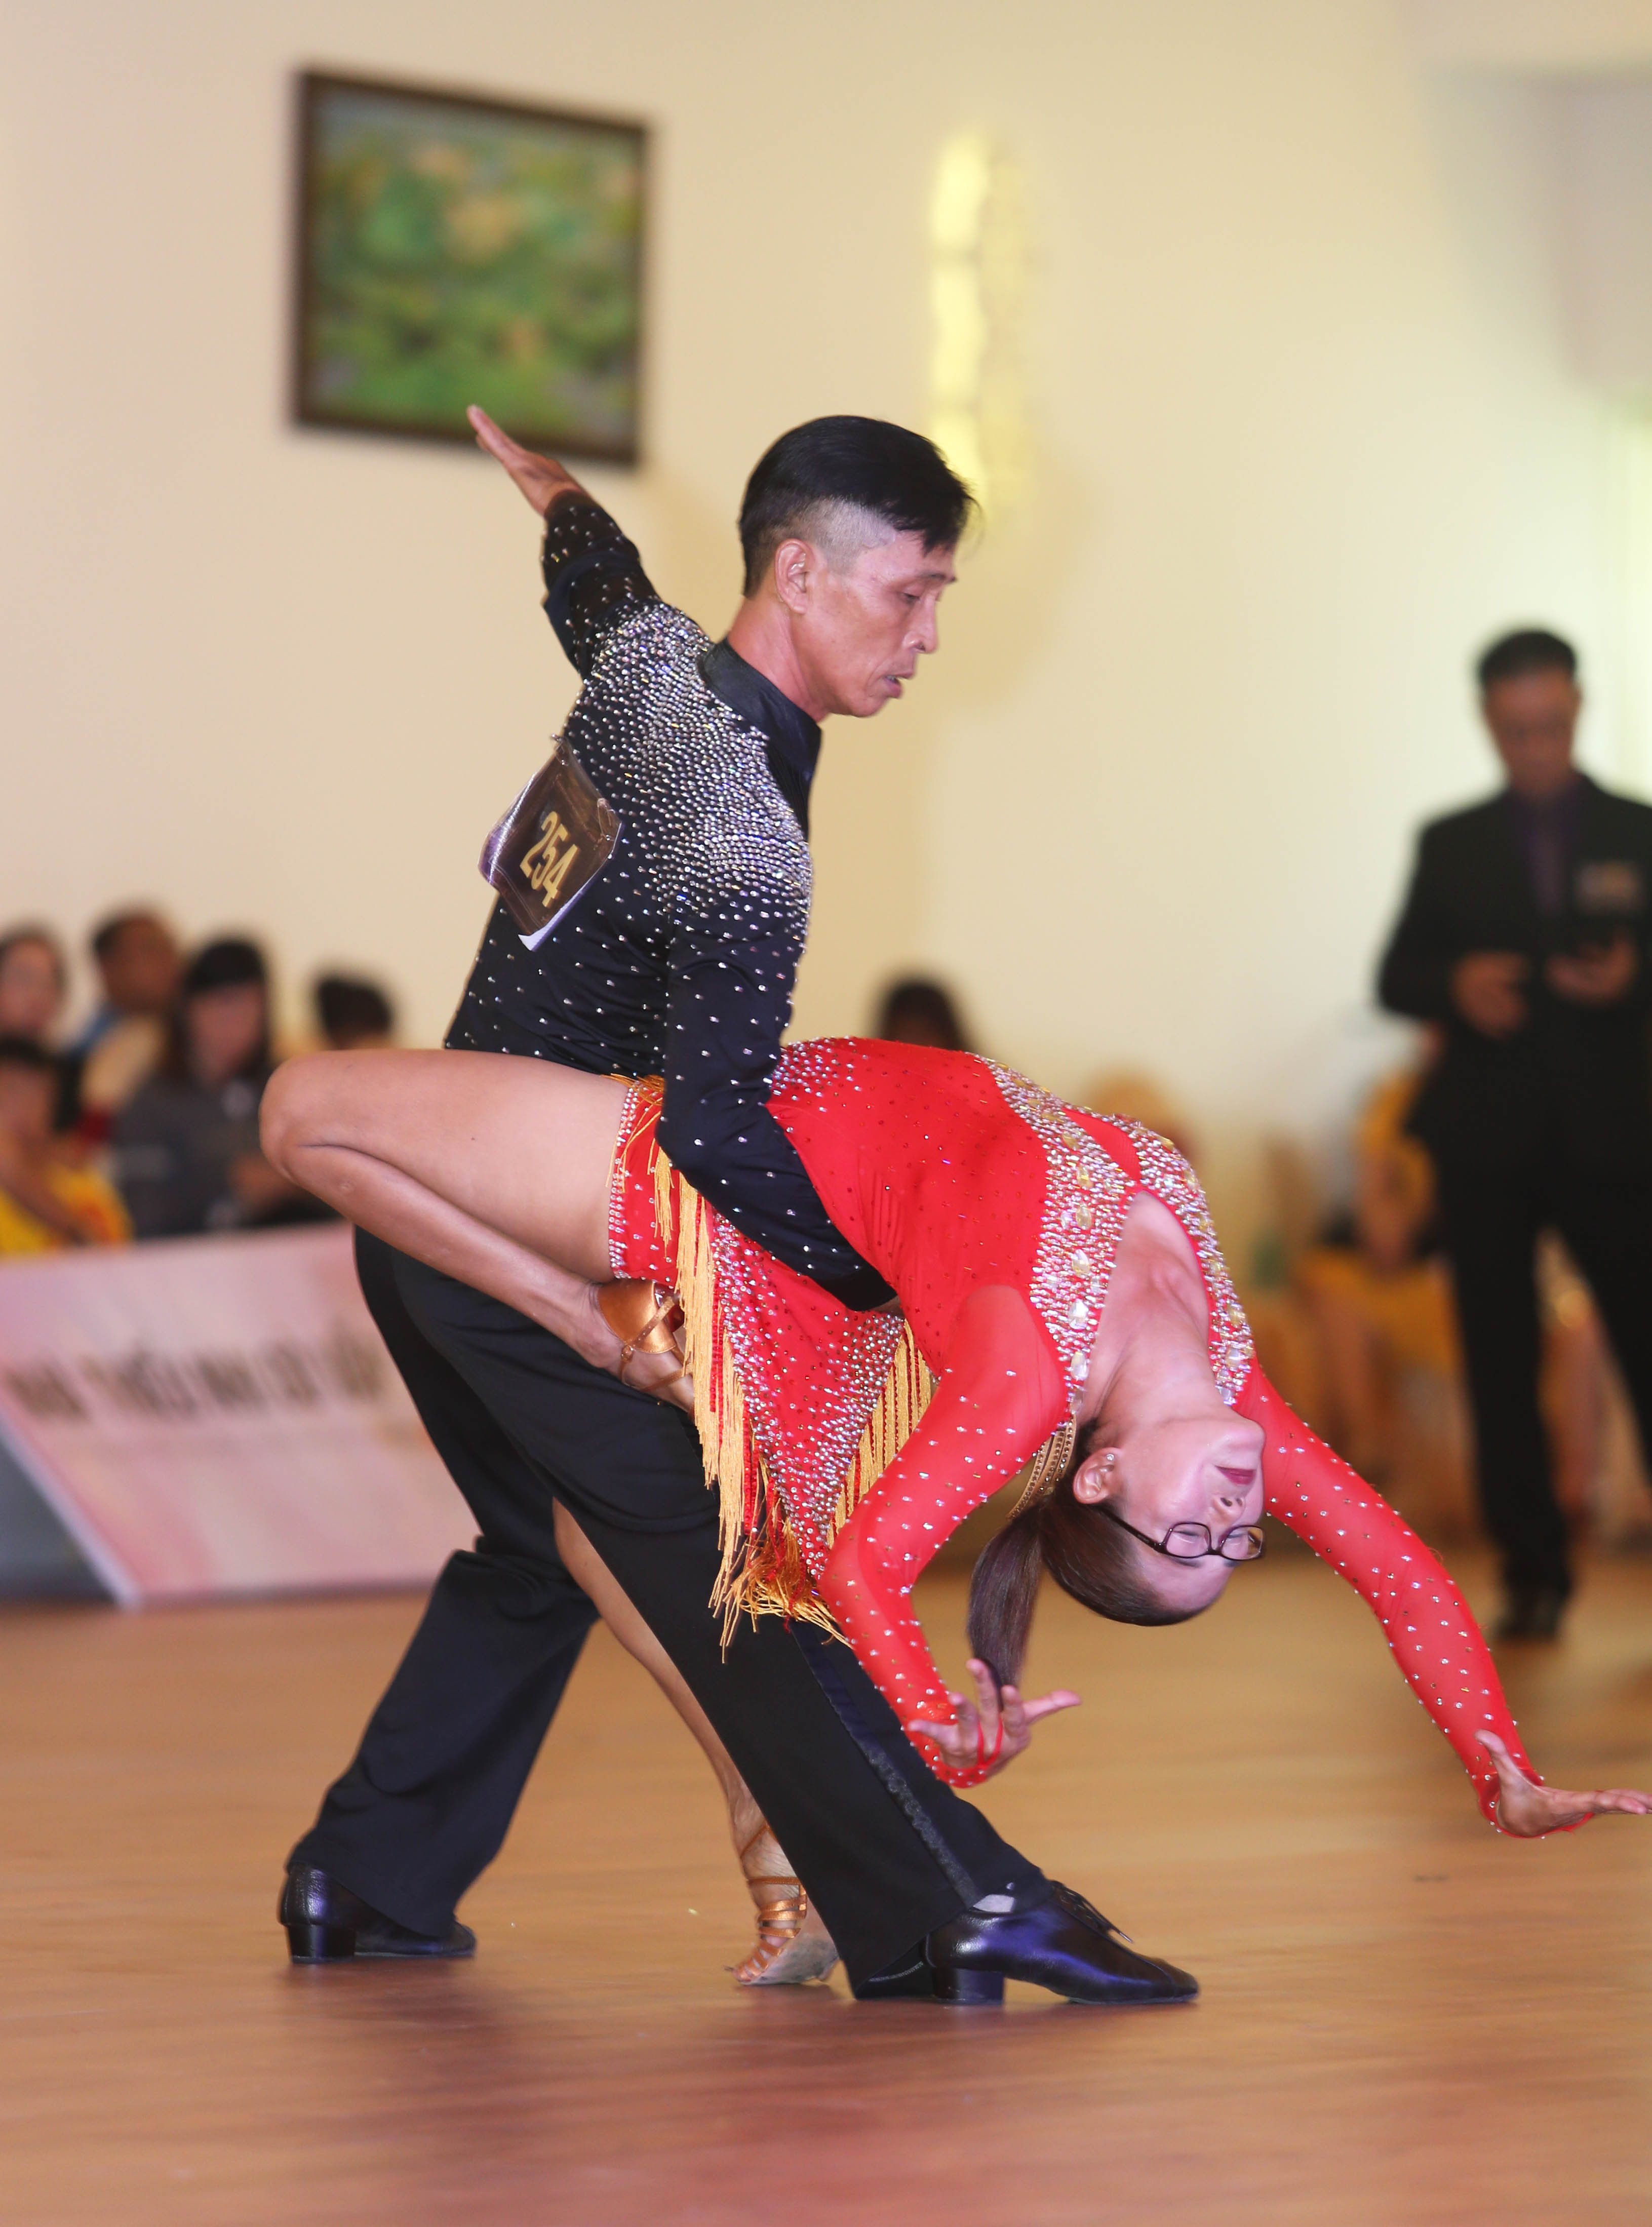 Hình ảnh: Gần 300 VĐV tham dự Giải khiêu vũ thể thao Cúp Grace Dance Mở Rộng số 4